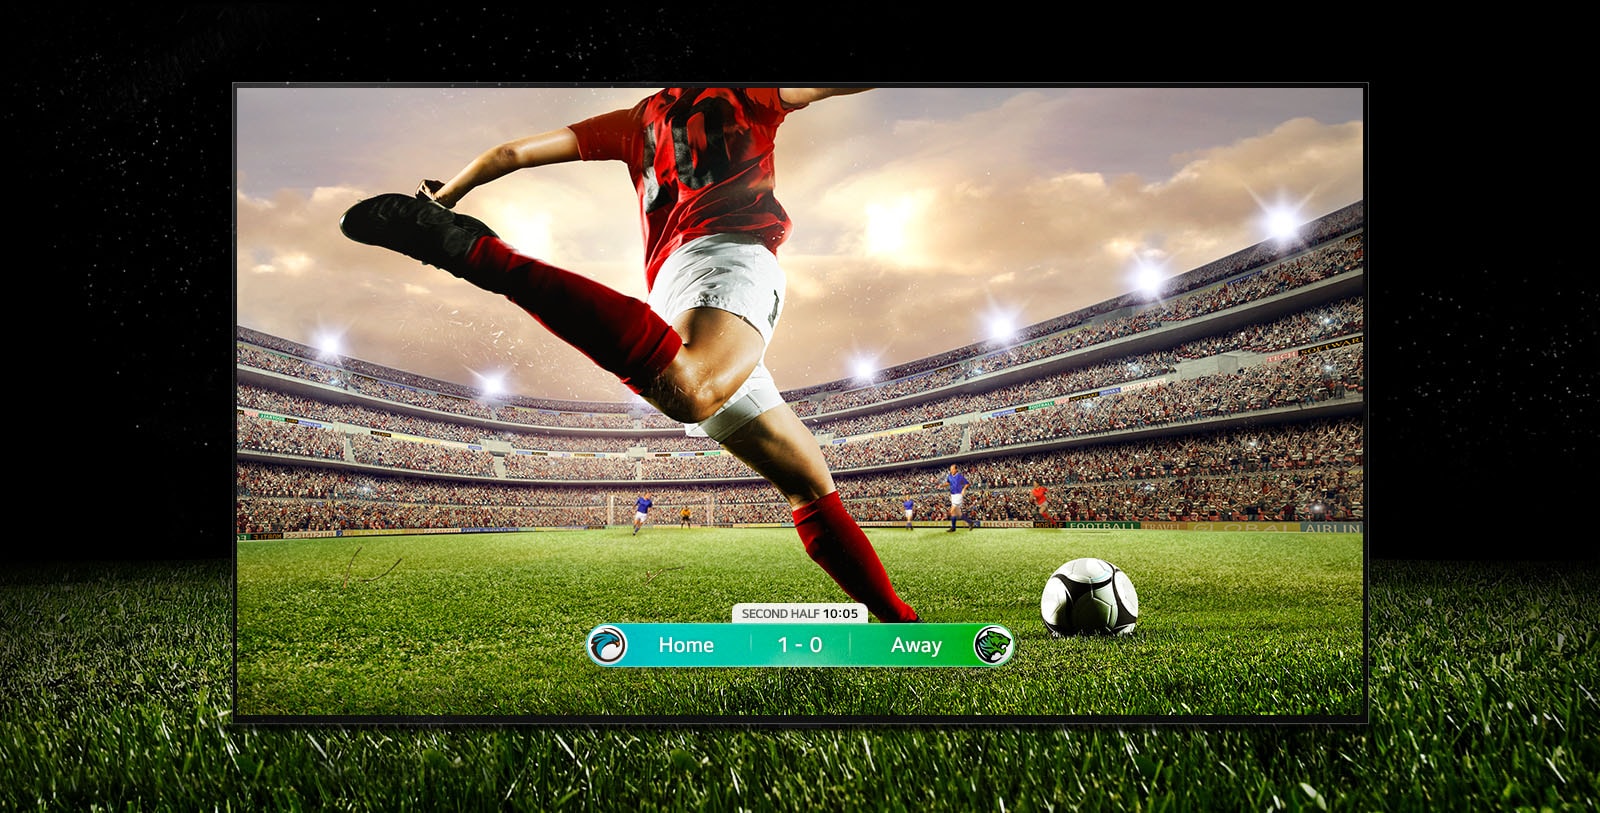 تصویر نمایشگر از یک بازی فوتبال با بازیکنی در لباس قرمز، که قصد دارد توپ را در عرض استادیوم شوت کند. امتیاز بازی در پایین صفحه نمایش قابل مشاهده است. چمن سبزِ زمین بازی، فراتر از صفحه نمایش در پس زمینه سیاه قابل مشاهده است.